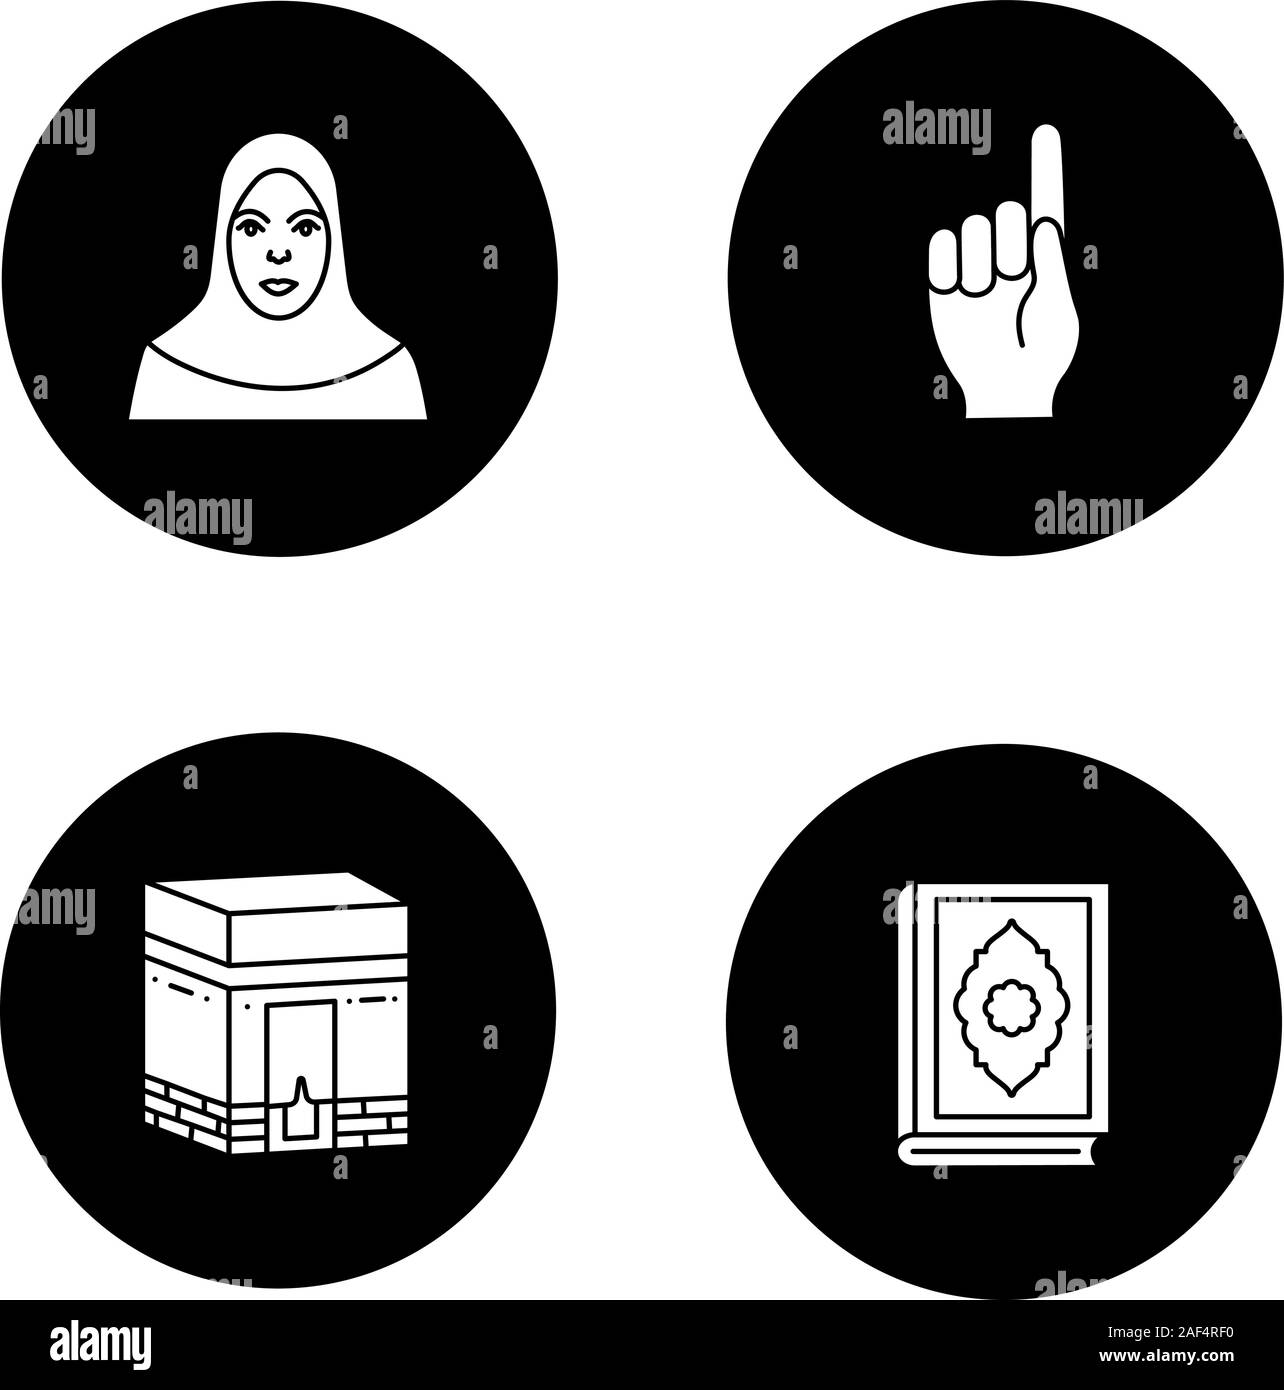 Die islamische Kultur Glyphe Symbole gesetzt. Muslimische Frau, Gott Geste, Kaaba, quran Buch. Vektor weisse Silhouetten Abbildungen in schwarzen Kreisen Stock Vektor